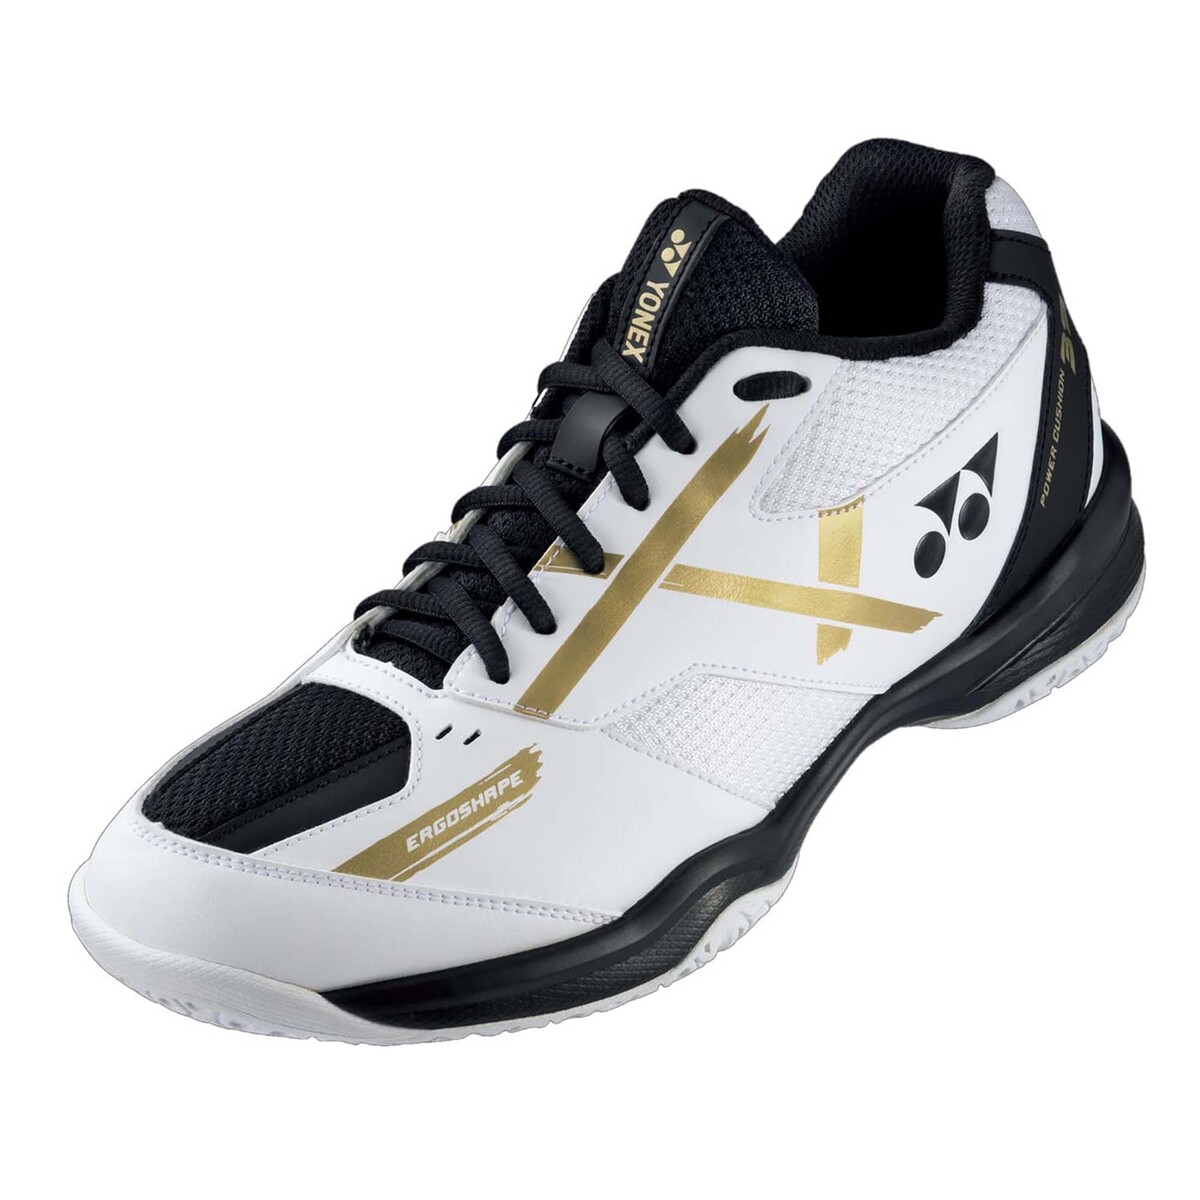 يونيكس حذاء تنس الريشة للرجال، SHB39WEX، أبيض/ذهبي، 41